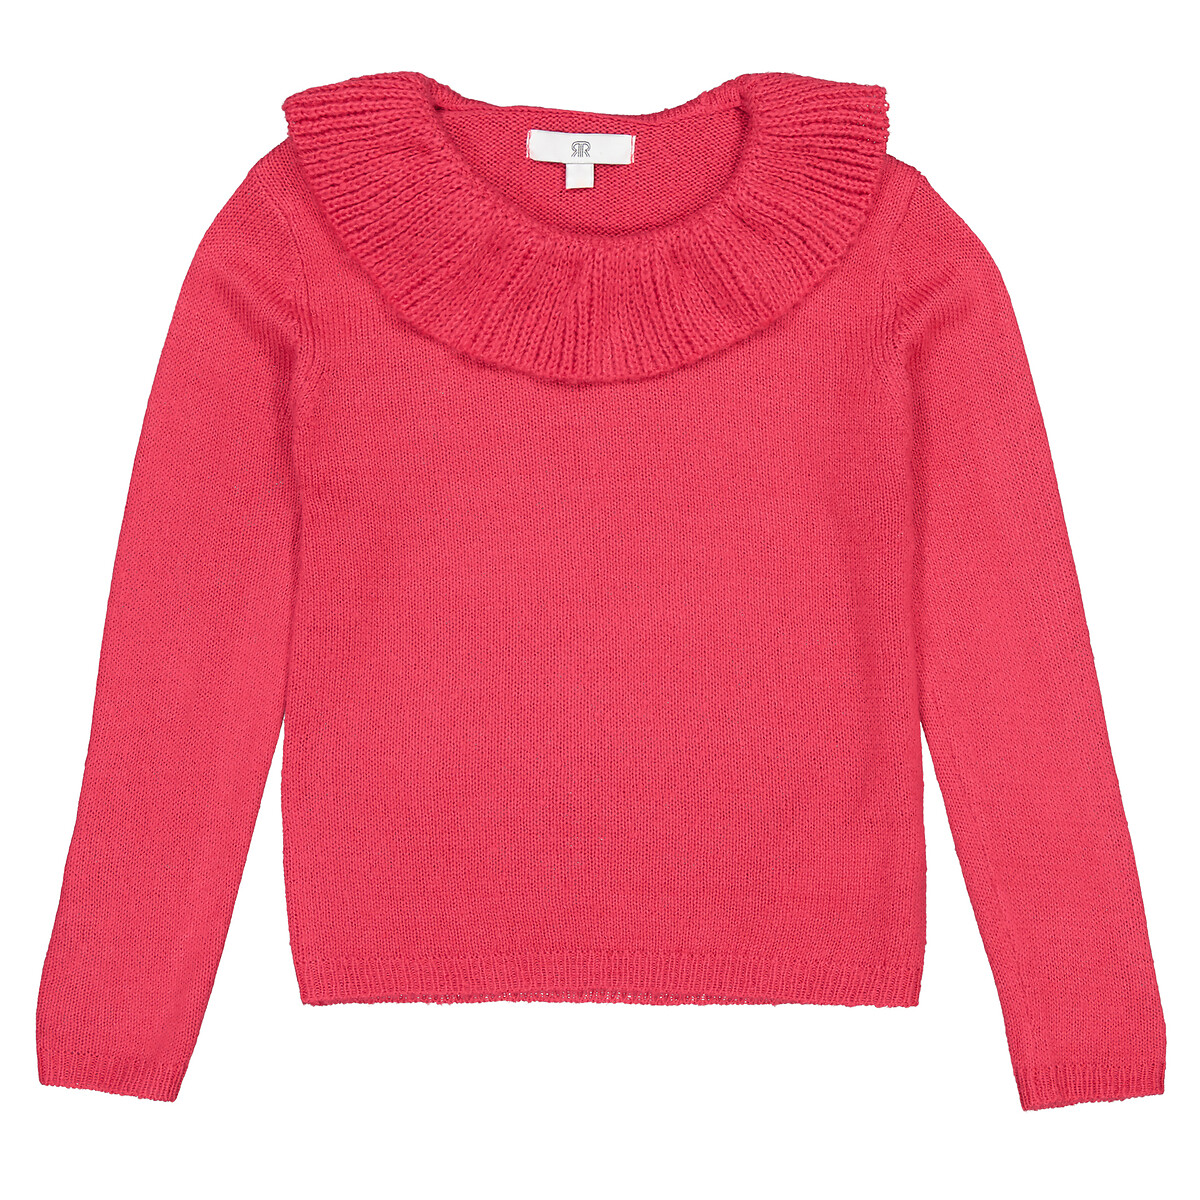 Пуловер С круглым вырезом с воланами из тонкого трикотажа 3-12 лет 12 лет -150 см розовый LaRedoute, размер 12 лет -150 см - фото 3